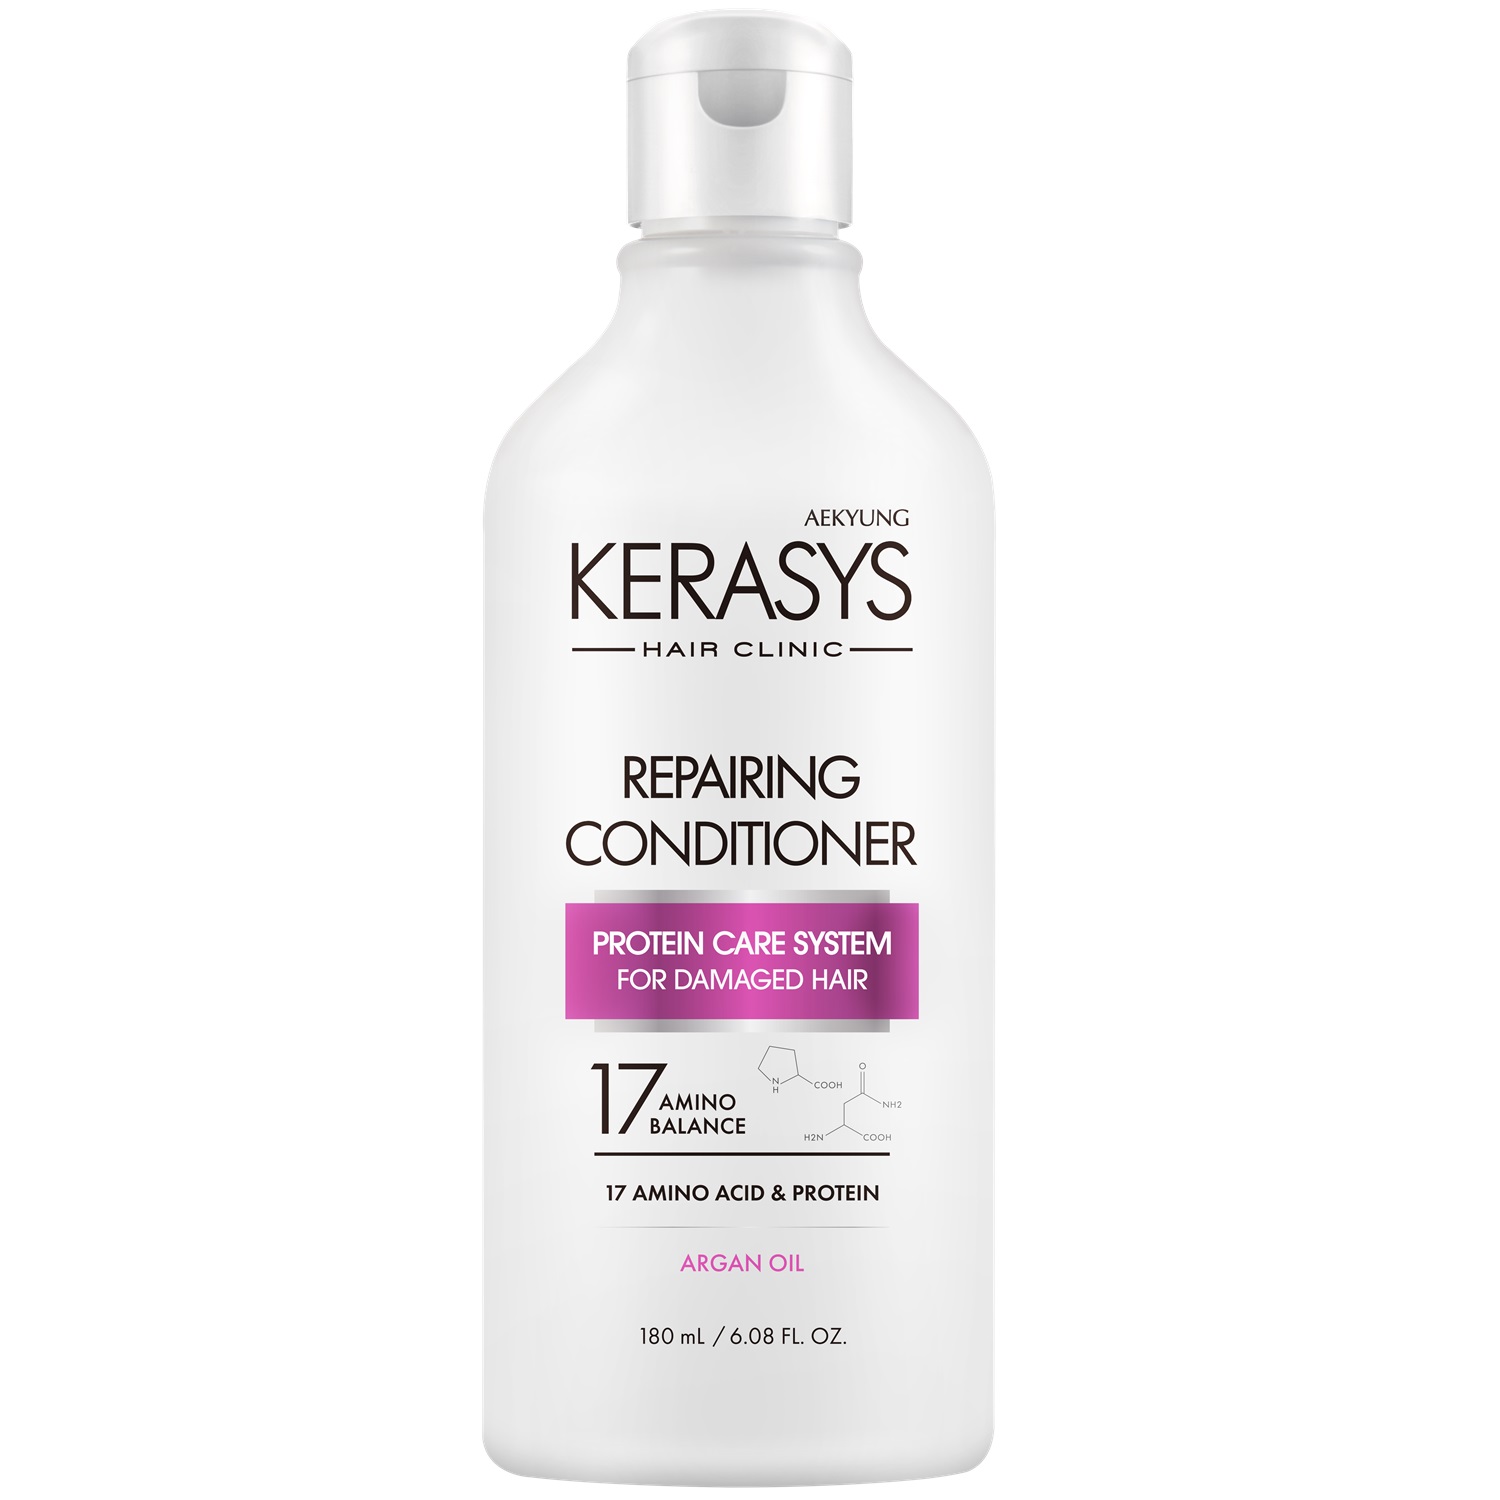 Kerasys Кондиционер для волос восстанавливающий Repairing, 180 мл (Kerasys, Hair Clinic) kerasys шампунь repairing восстанавливающий 180 мл